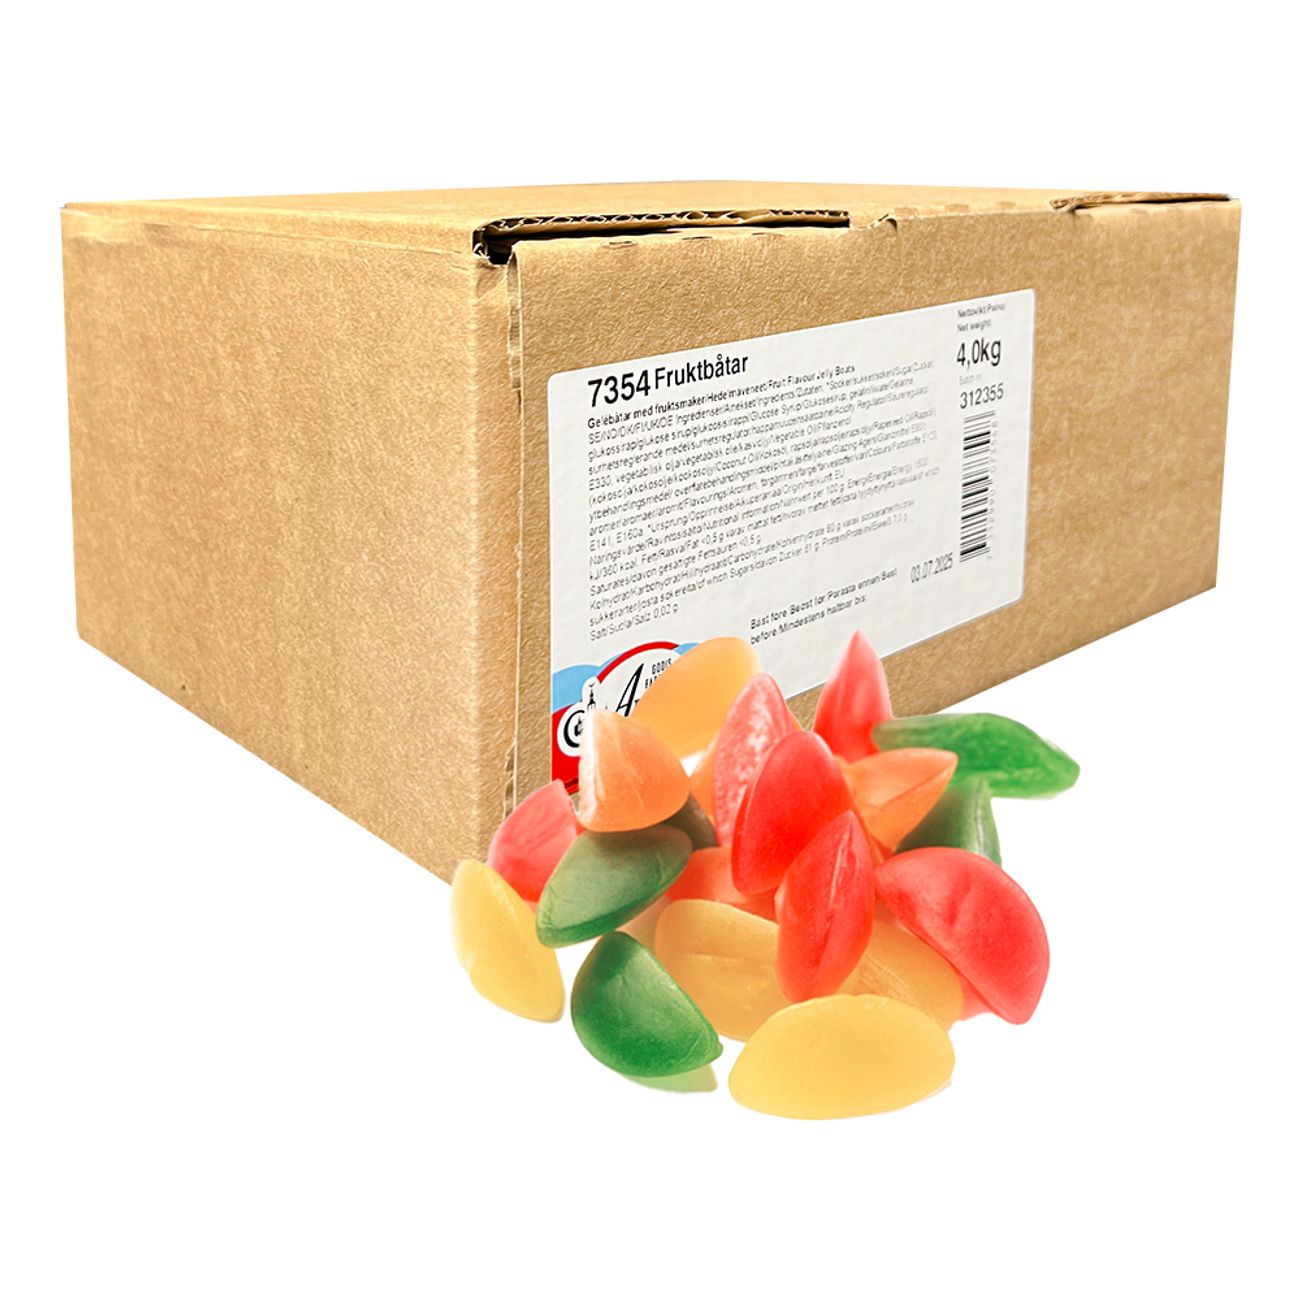 aroma-fruktbatar-storpack-103035-1